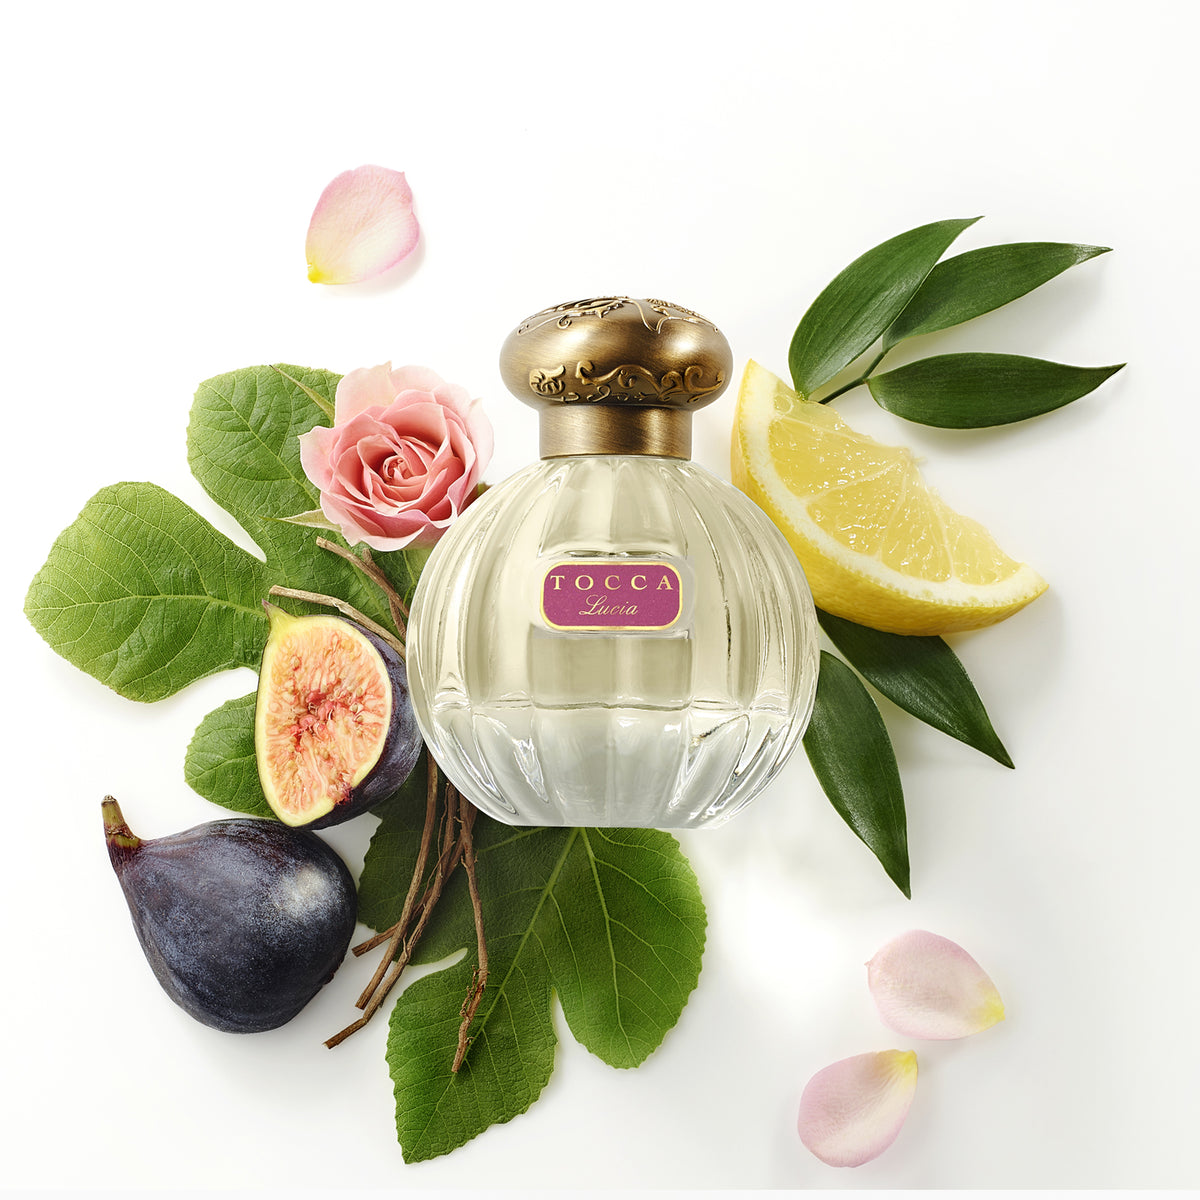 Lucia Eau de Parfum bottle with figs